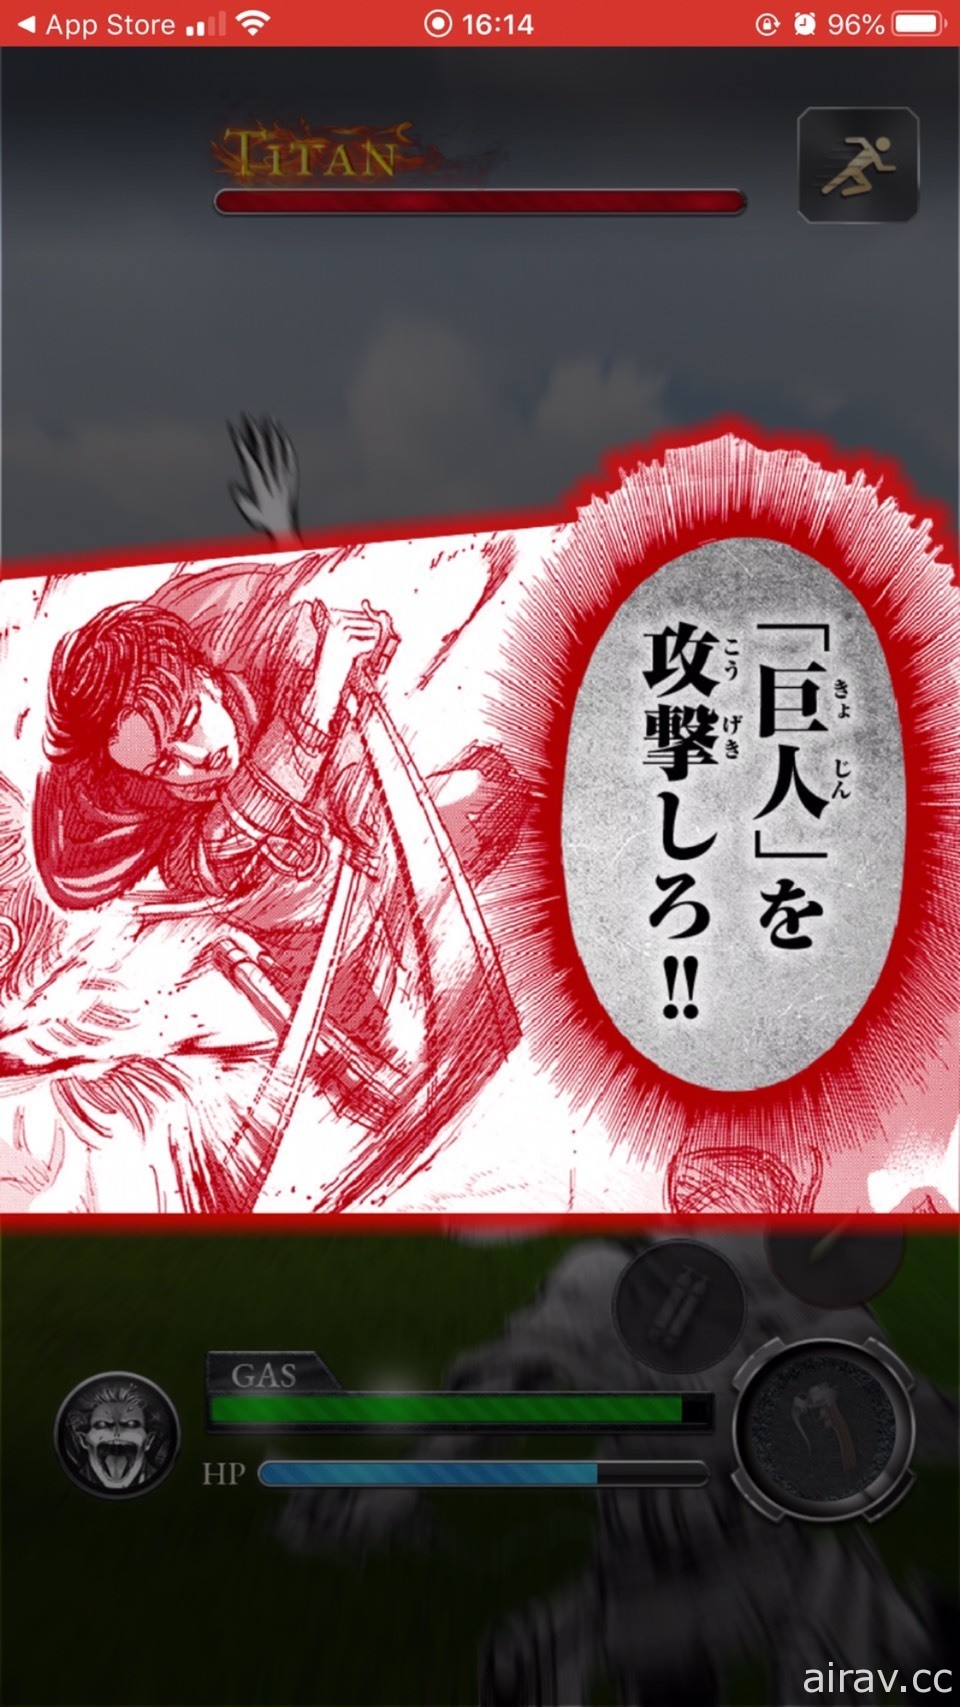 AR 地理定位游戏《进撃的巨人 in HITA》于日本推出 在作者谏山创的故乡讨伐巨人！